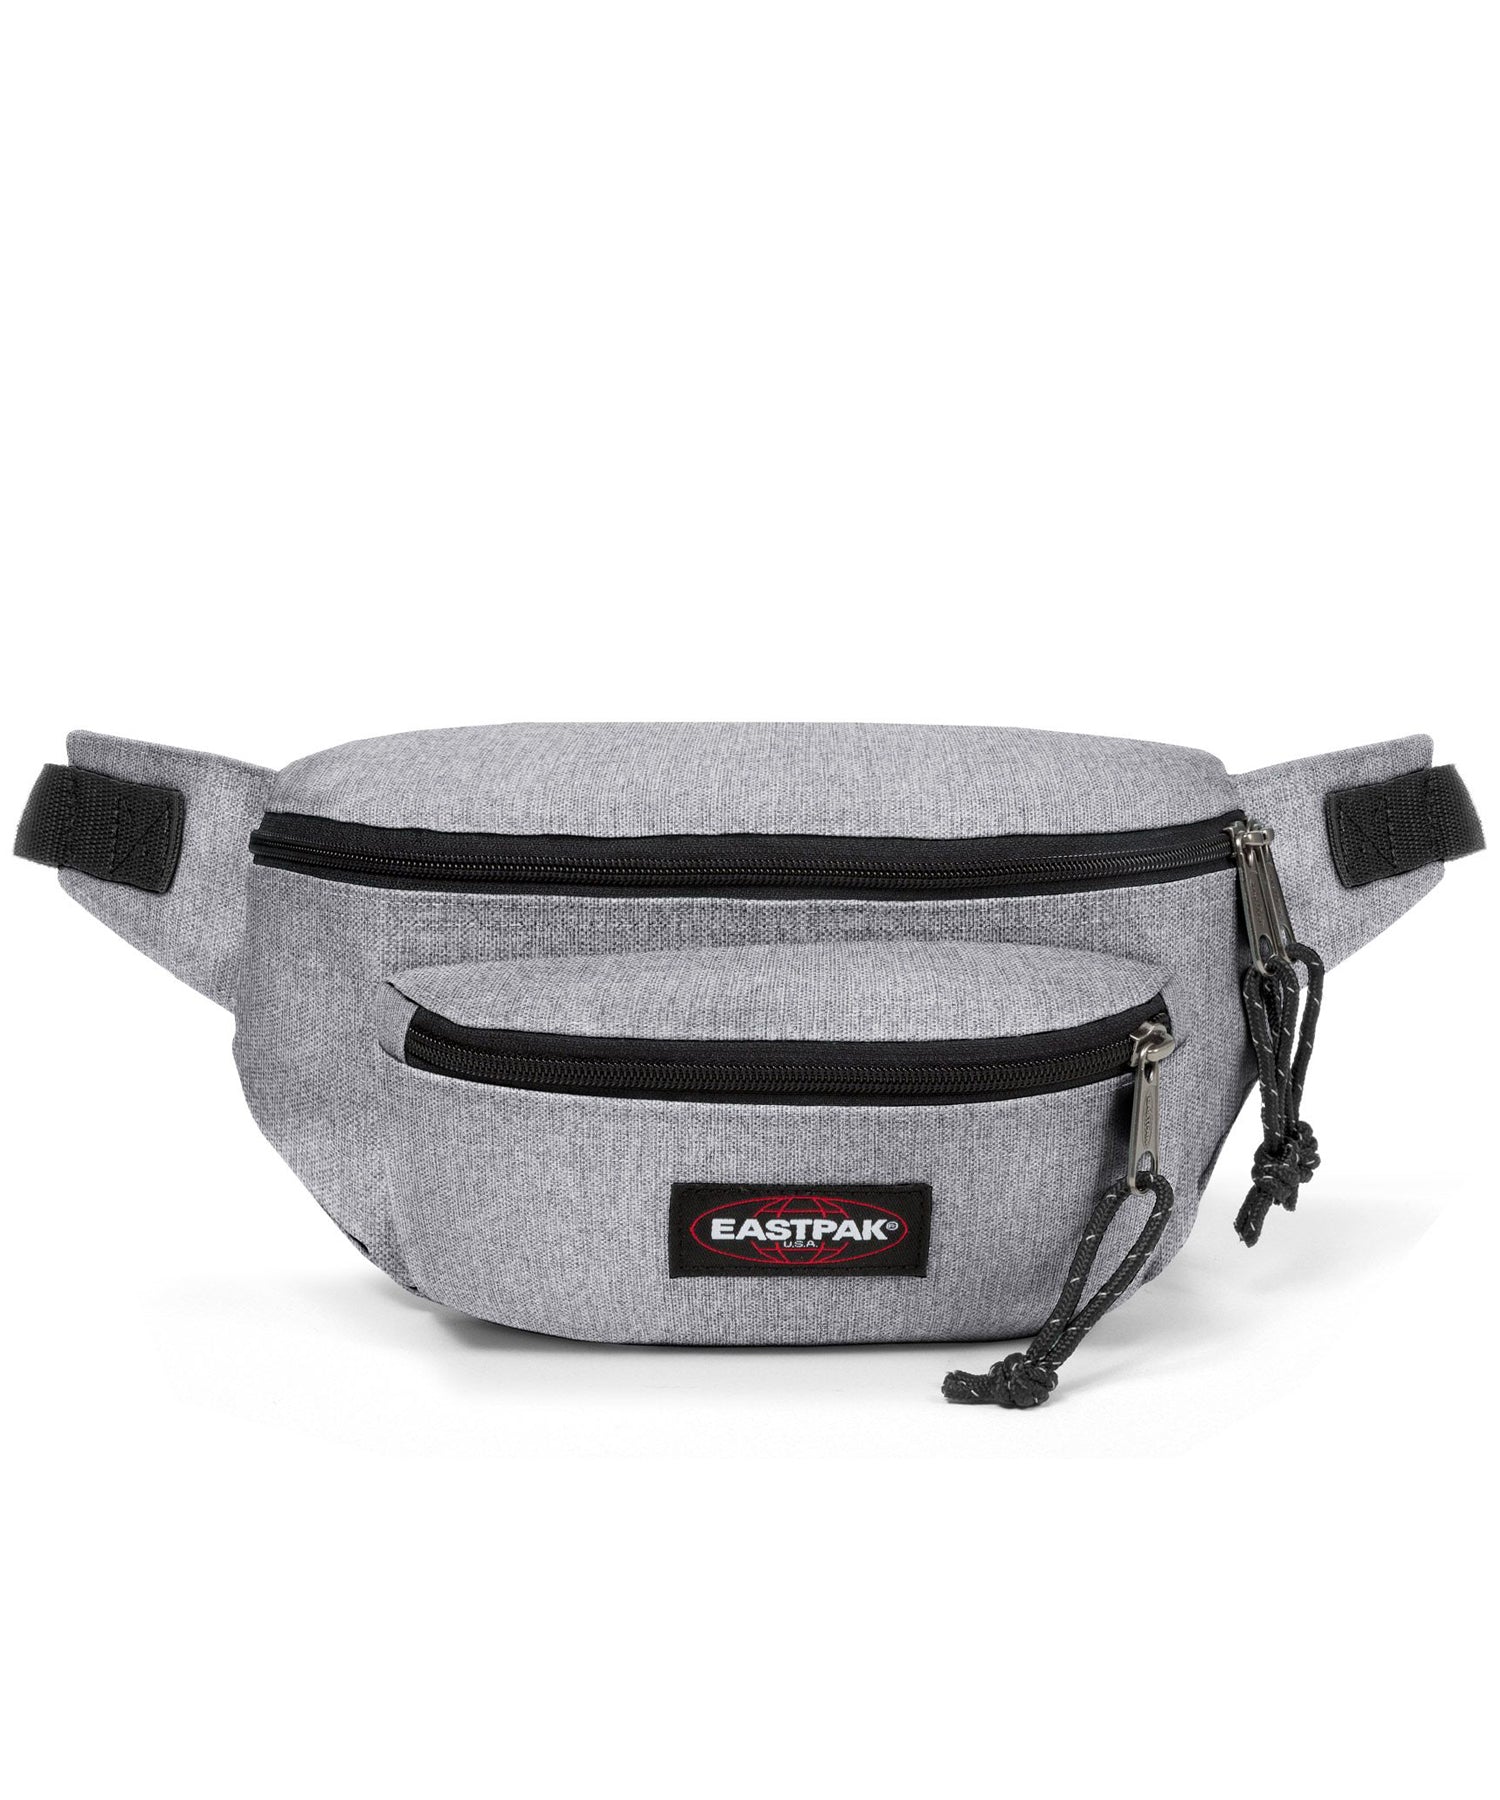 eastpak-doggy bag v-riñonera amplia de color gris claro-dos bolsillos delanteros y uno trasero-calidad y durabilidad eastpak